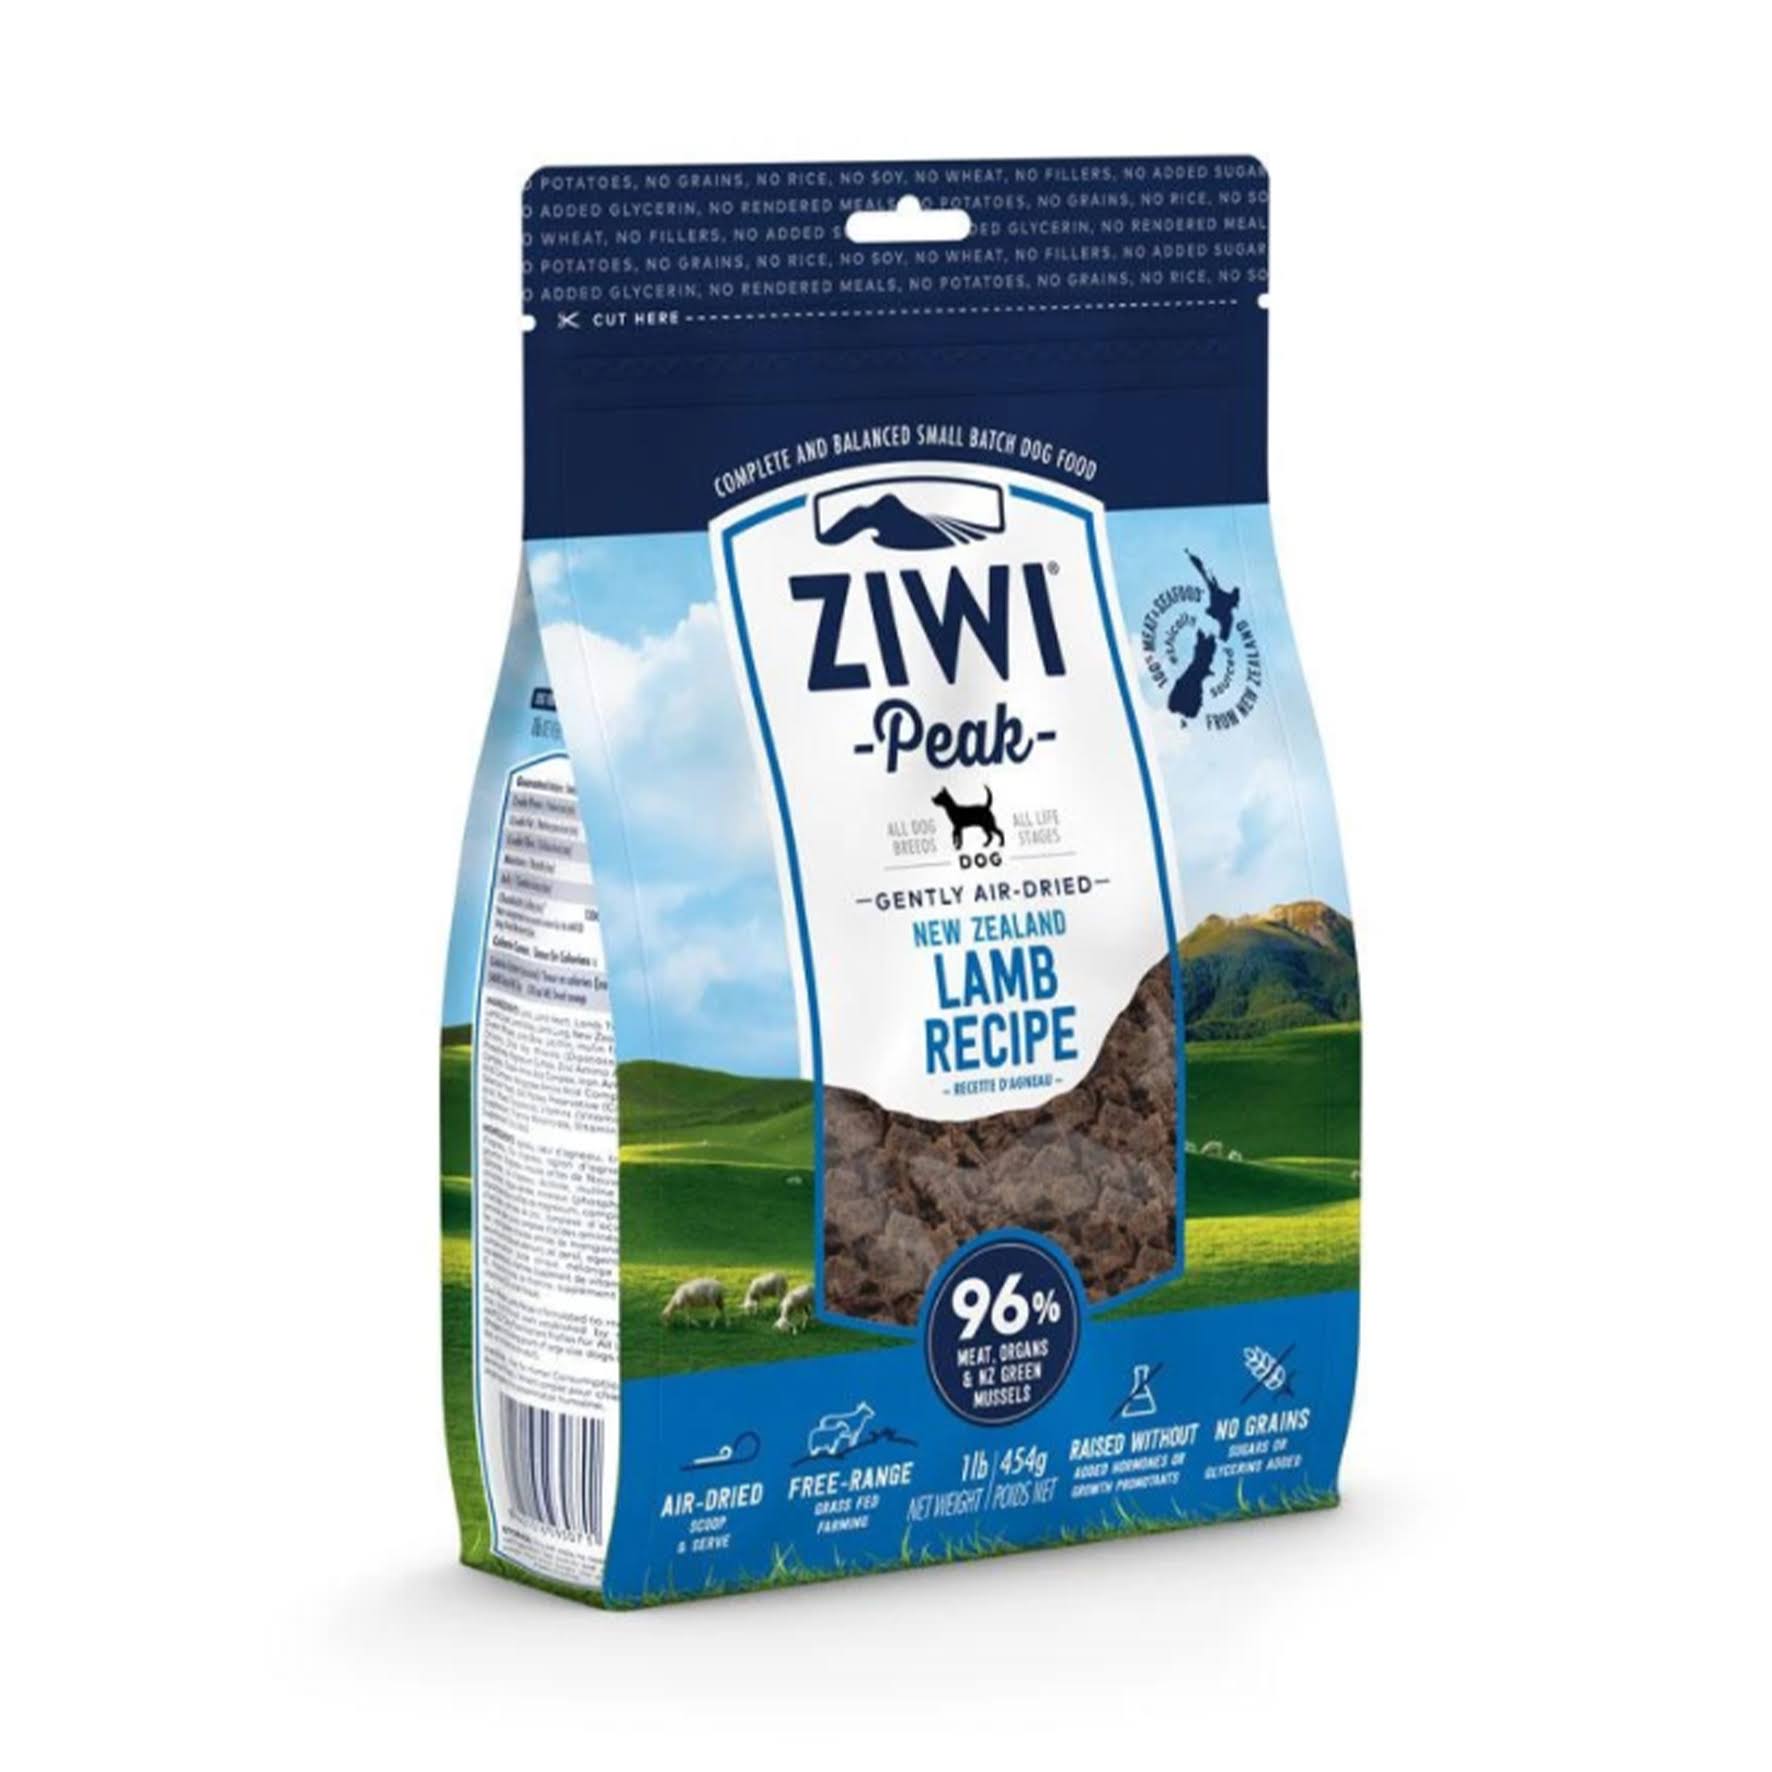 Ziwi Peak Air Dried Dog Food - Lamb, 2.2lbs